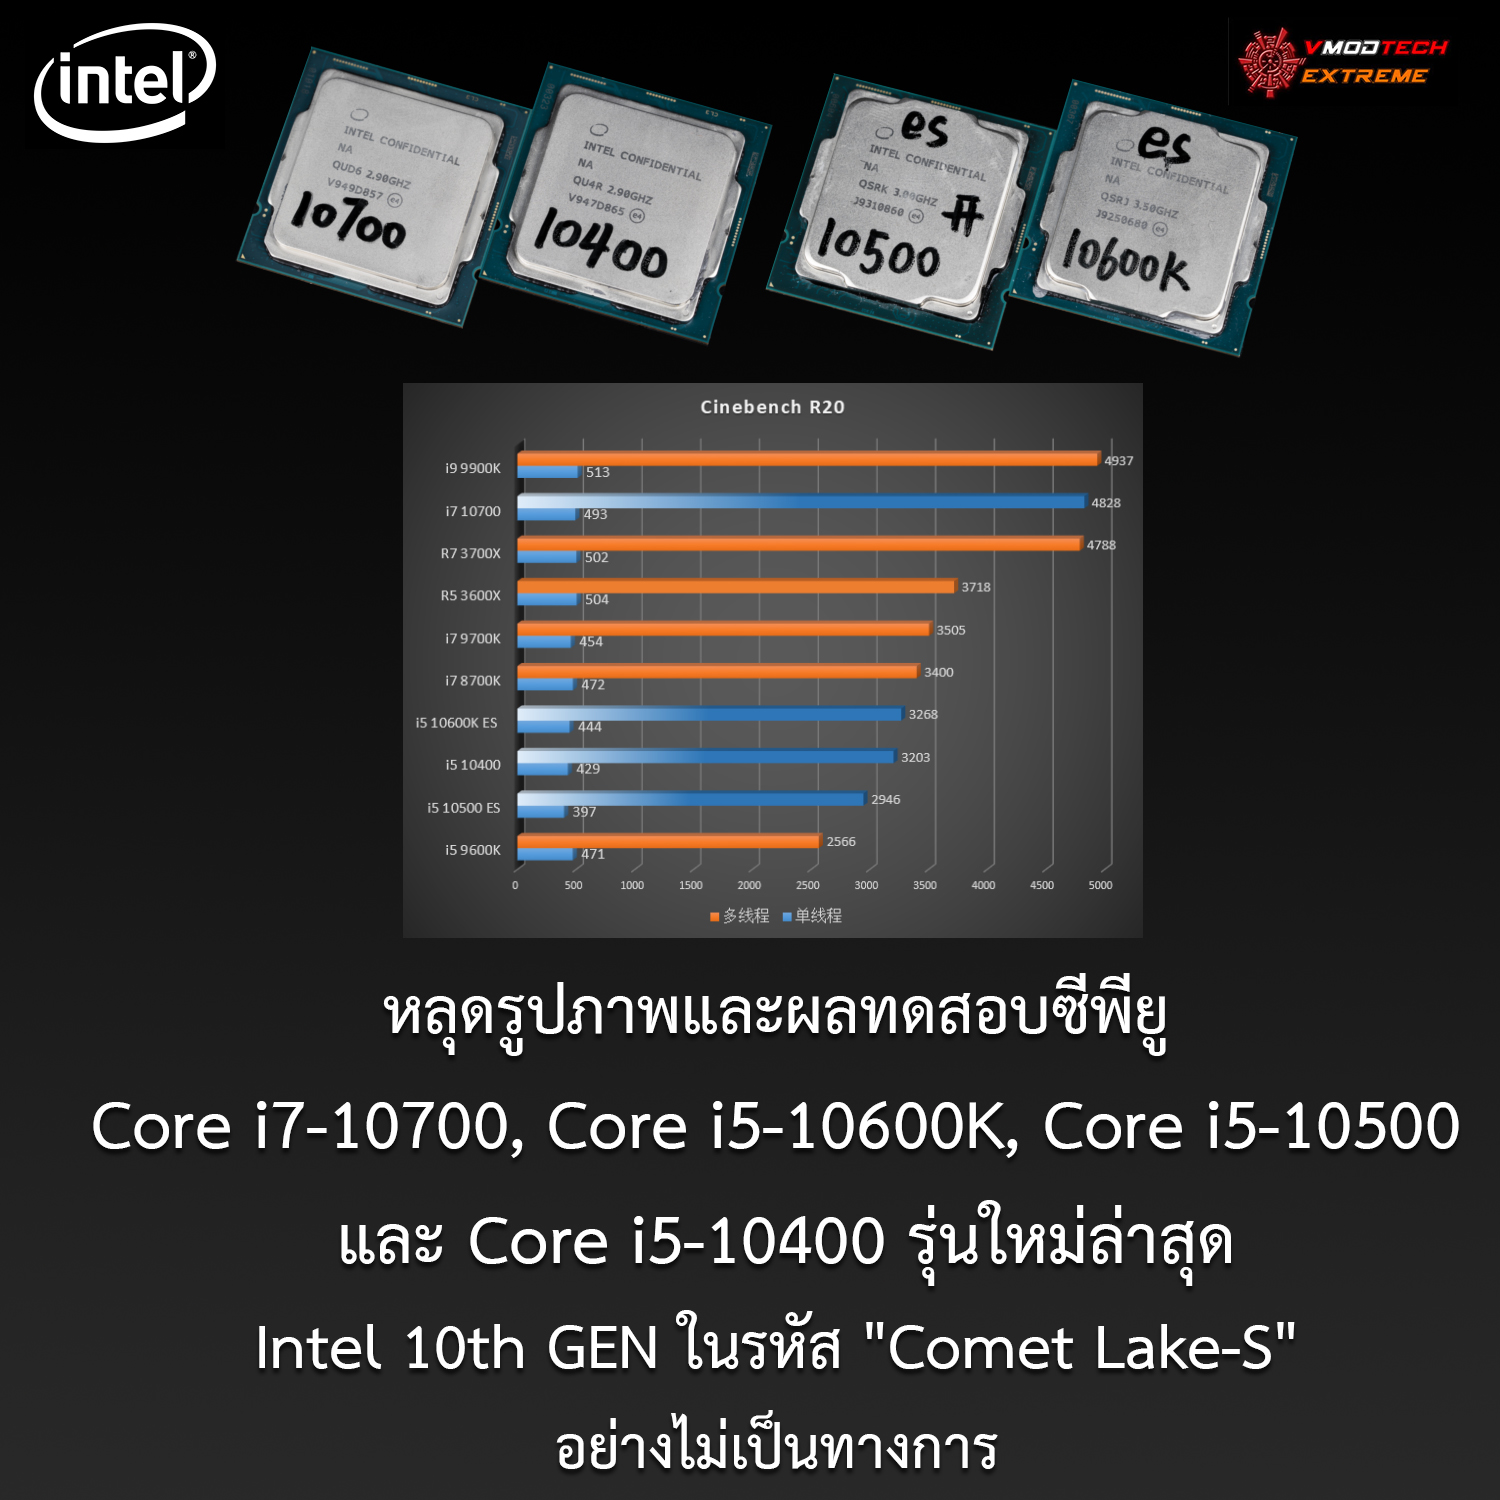 core i7 10700 core i5 10600k core i5 10500 core i5 10400 comet lake s หลุดรูปภาพและผลทดสอบซีพียู Core i7 10700, Core i5 10600K, Core i5 10500 และ Core i5 10400 อย่างไม่เป็นทางการ 